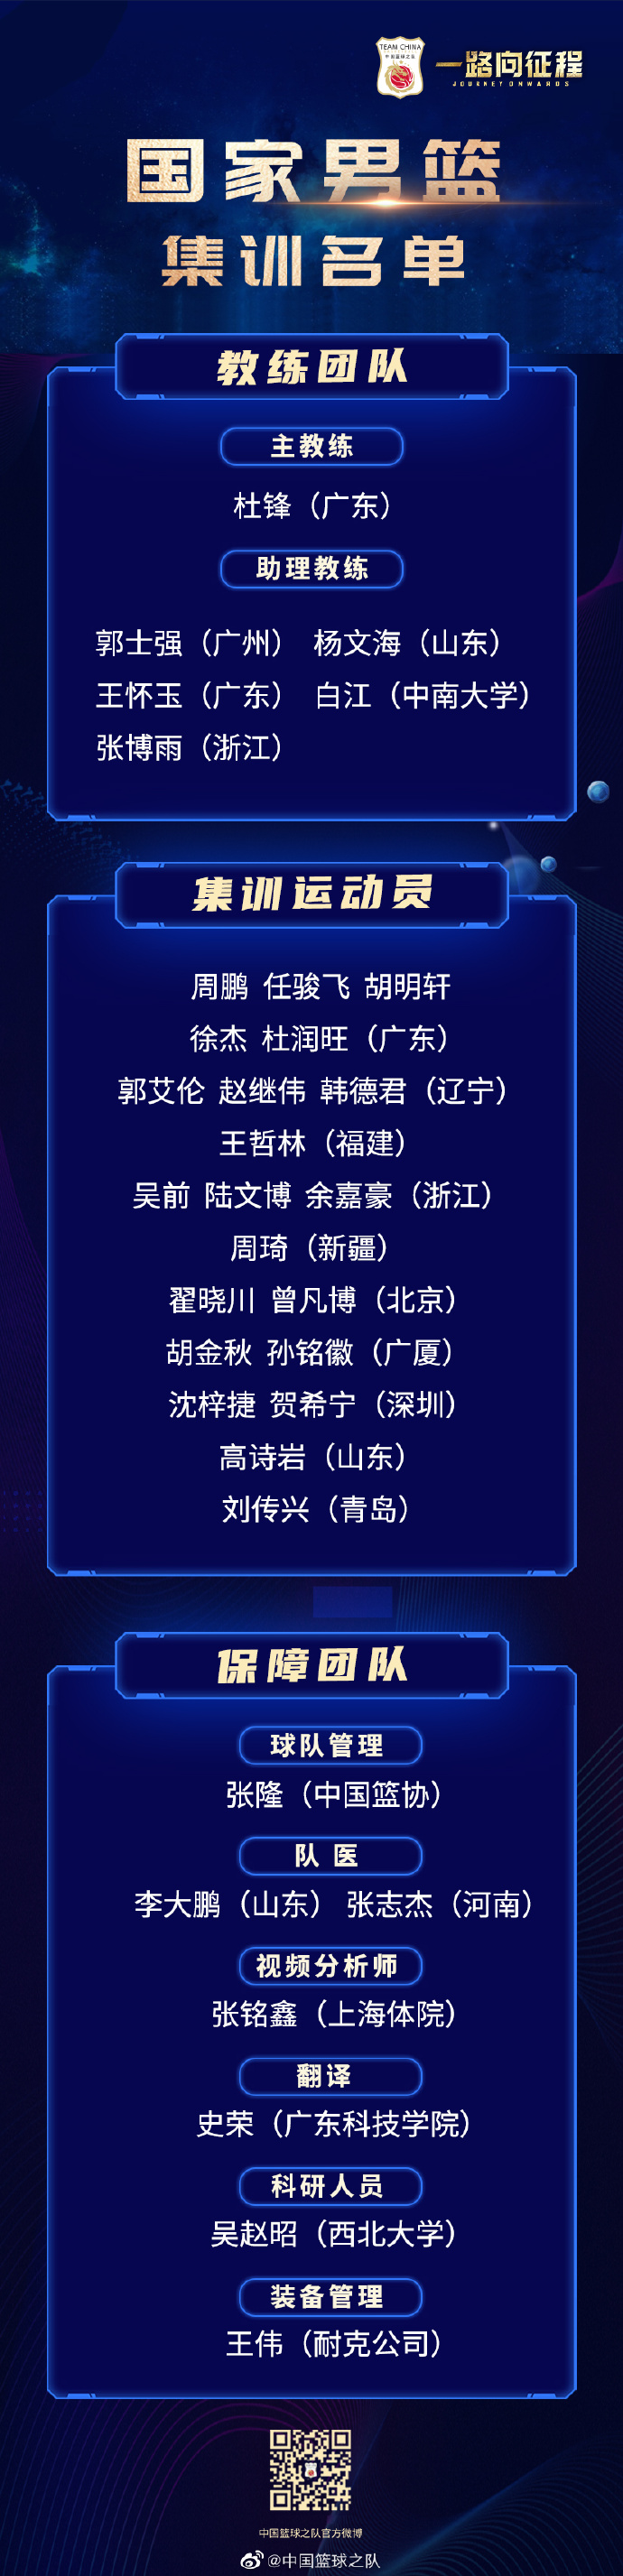 集训名单。图片来源：中国篮球之队官方微博